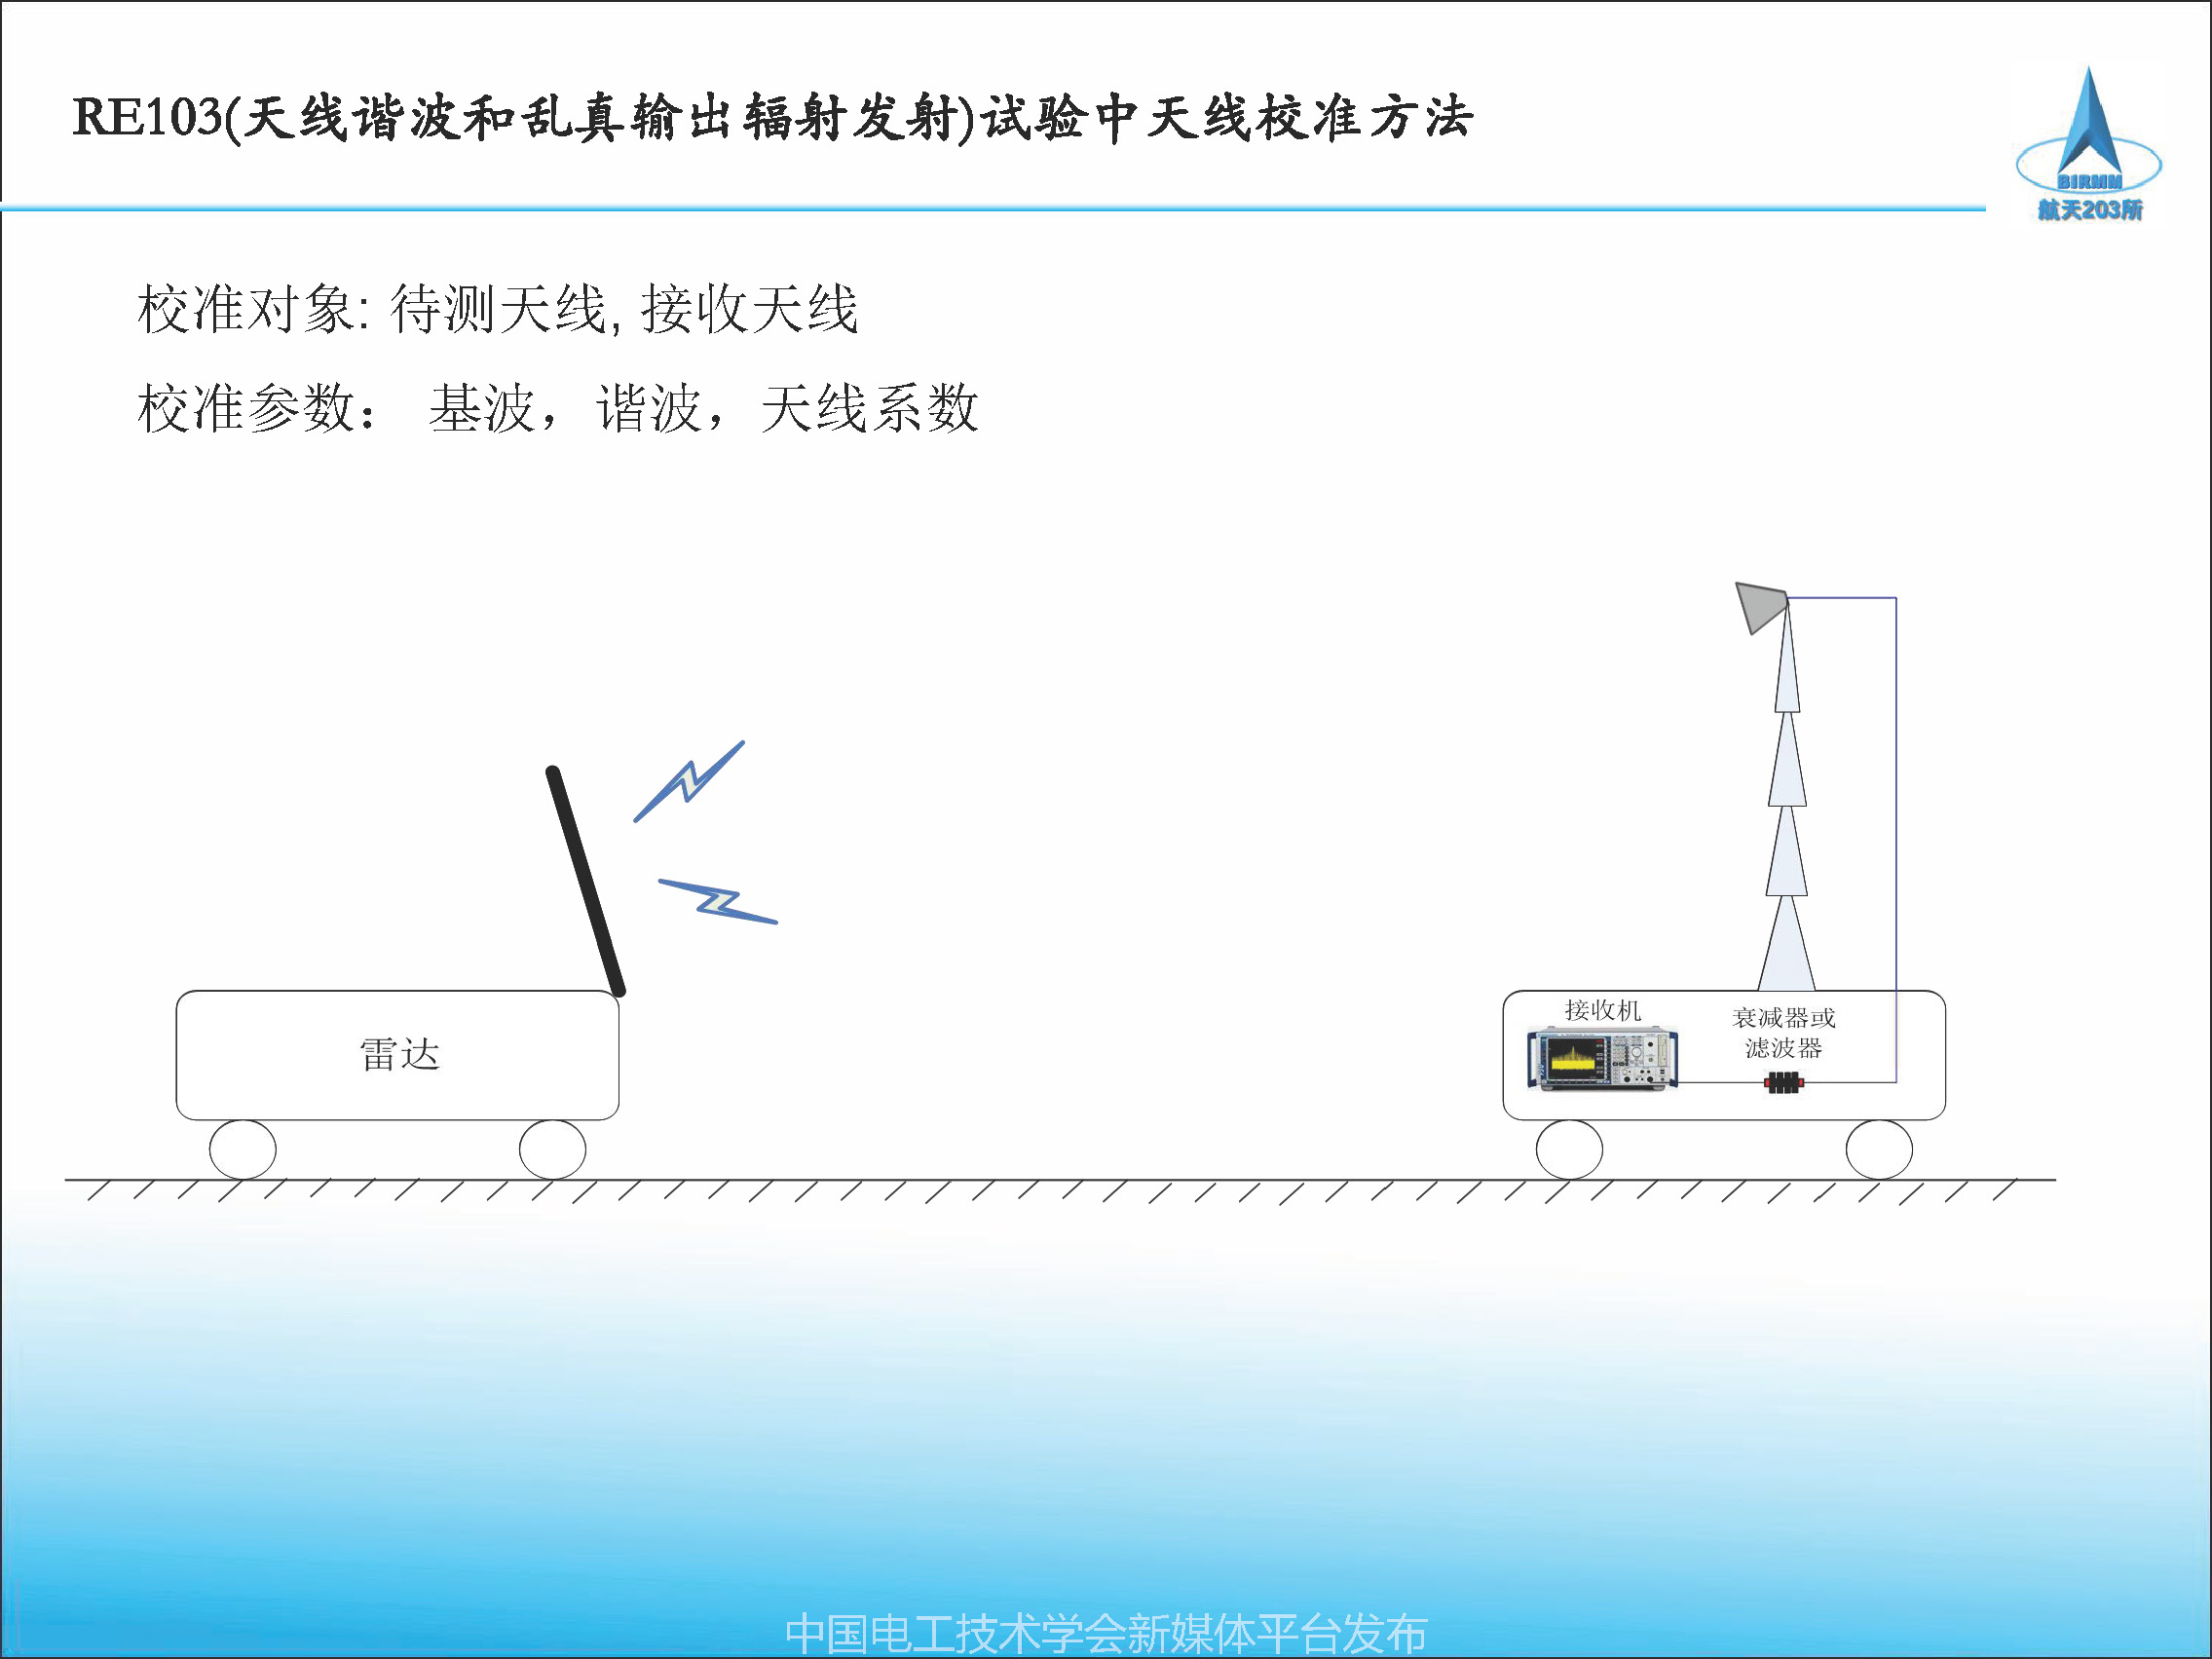 2021中国电磁兼容大会专家报告：天线校准方法及校准参数应用